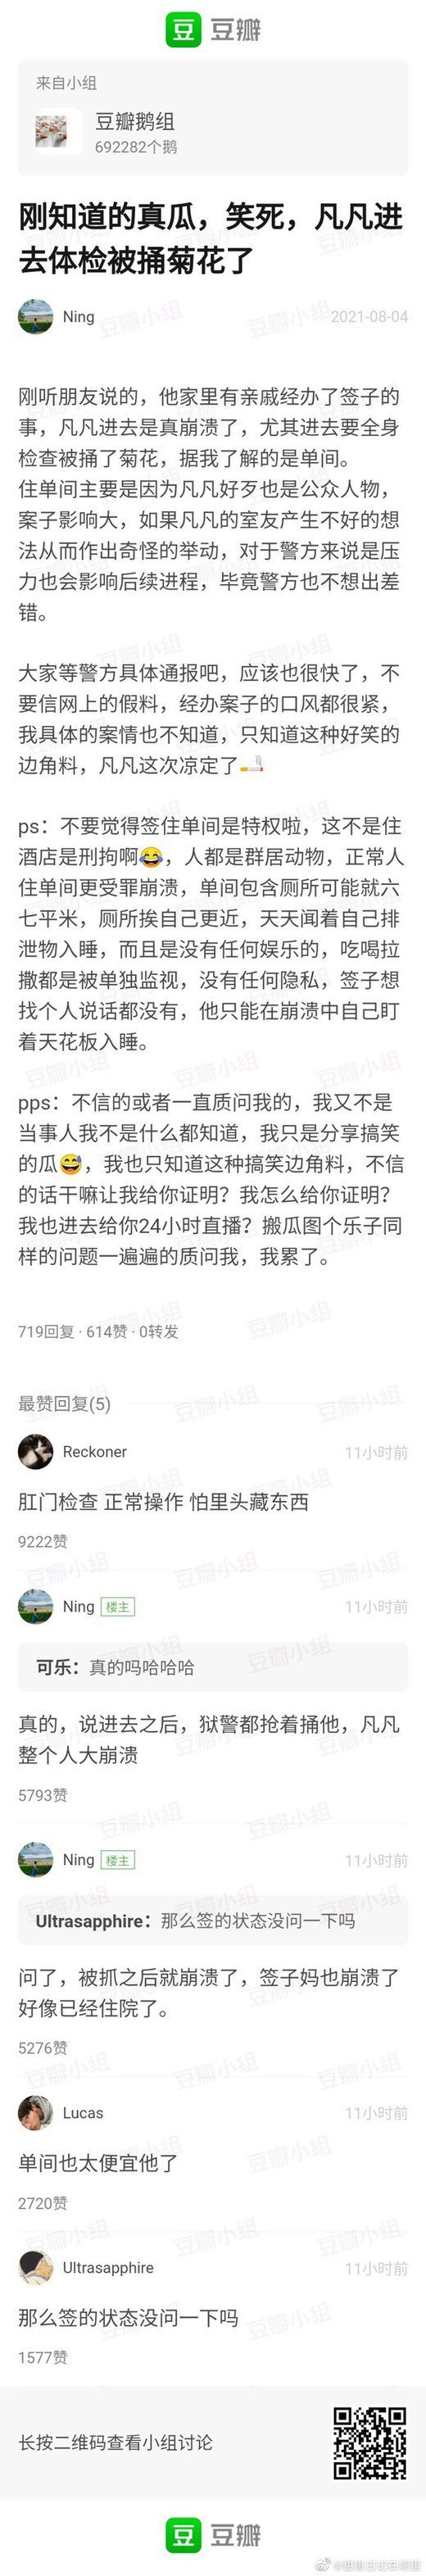 中国网友爆料吴亦凡在看守所的生活细节。